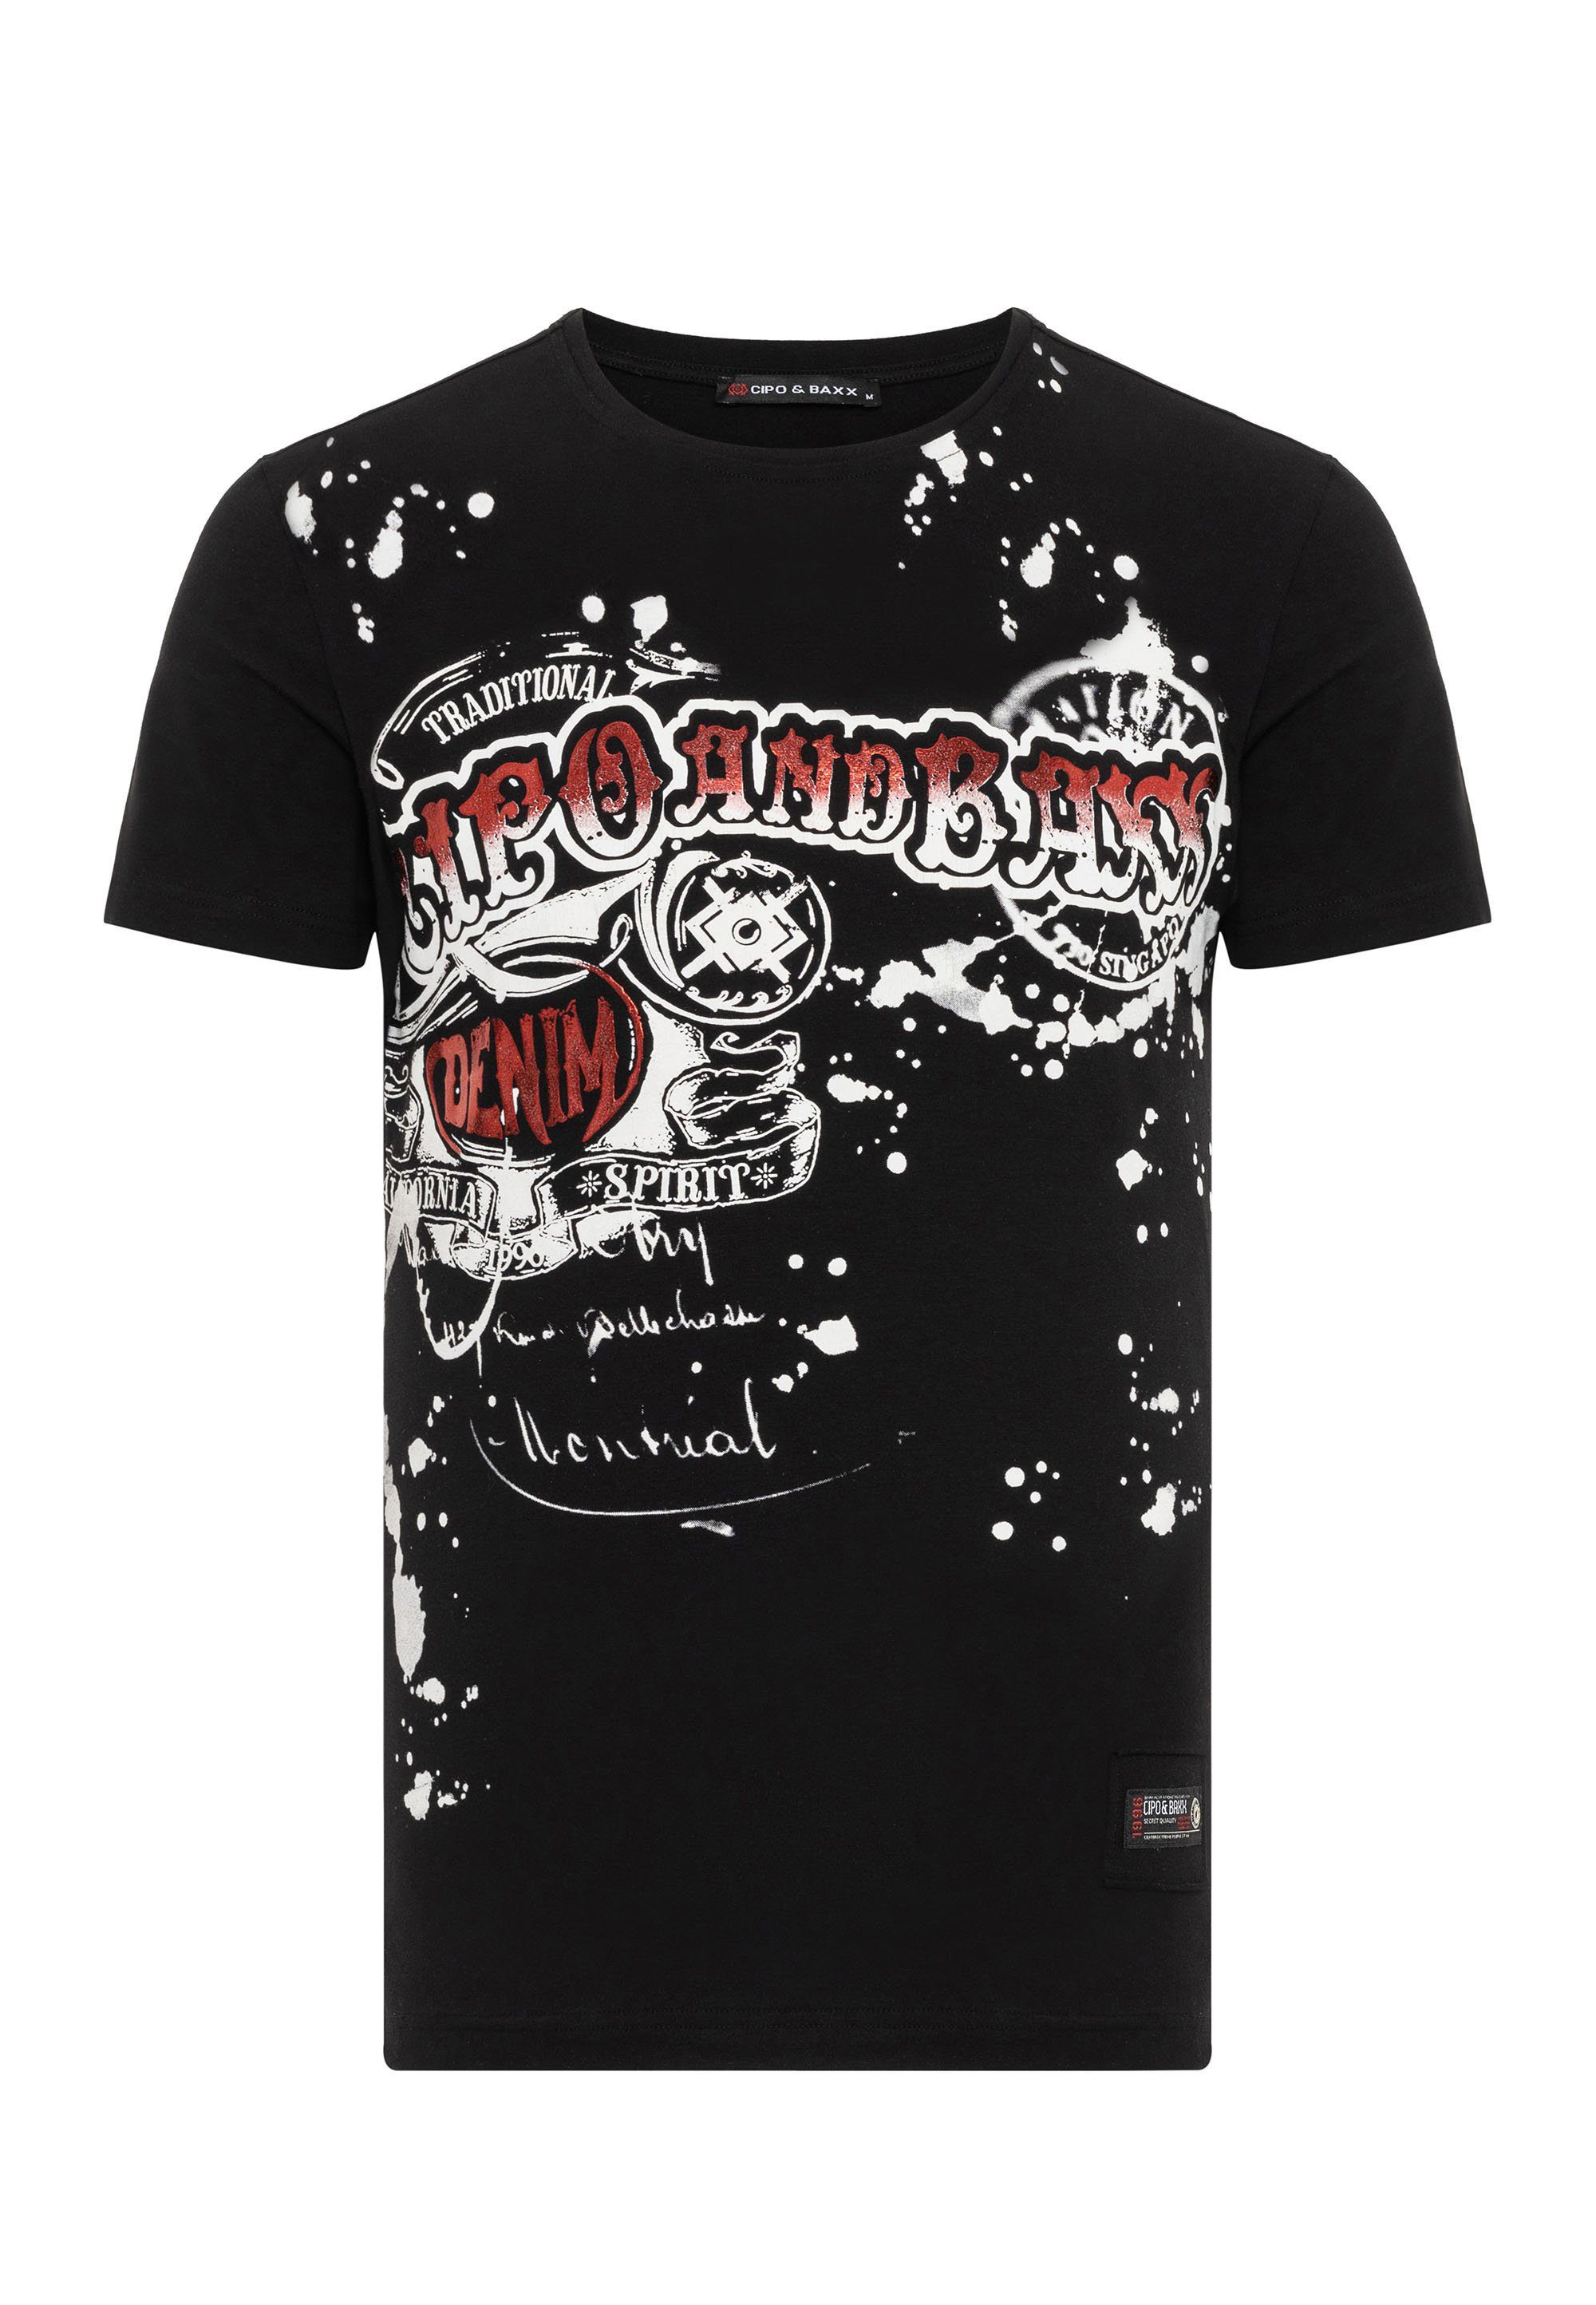 Markenprint Baxx schwarz & mit Cipo T-Shirt coolem